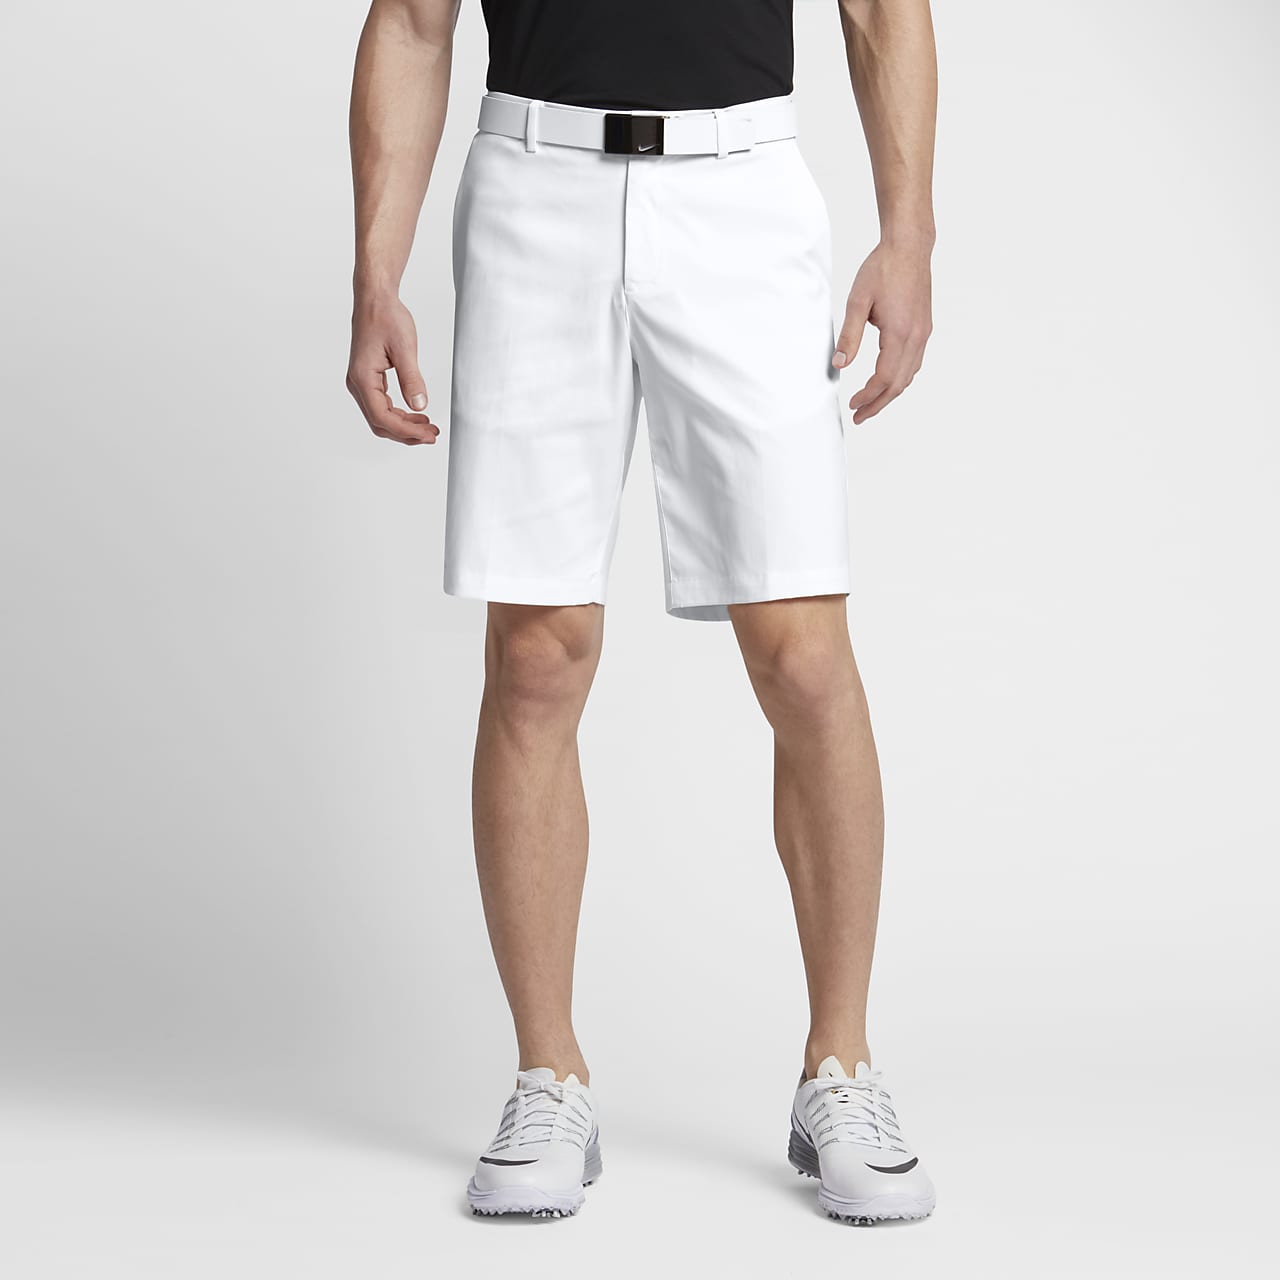 Классические мужские шорты. Nike Golf шорты мужские. Шорты Nike Standard Fit мужские. Шорты найк гольф. Nike Golf шорты белые.